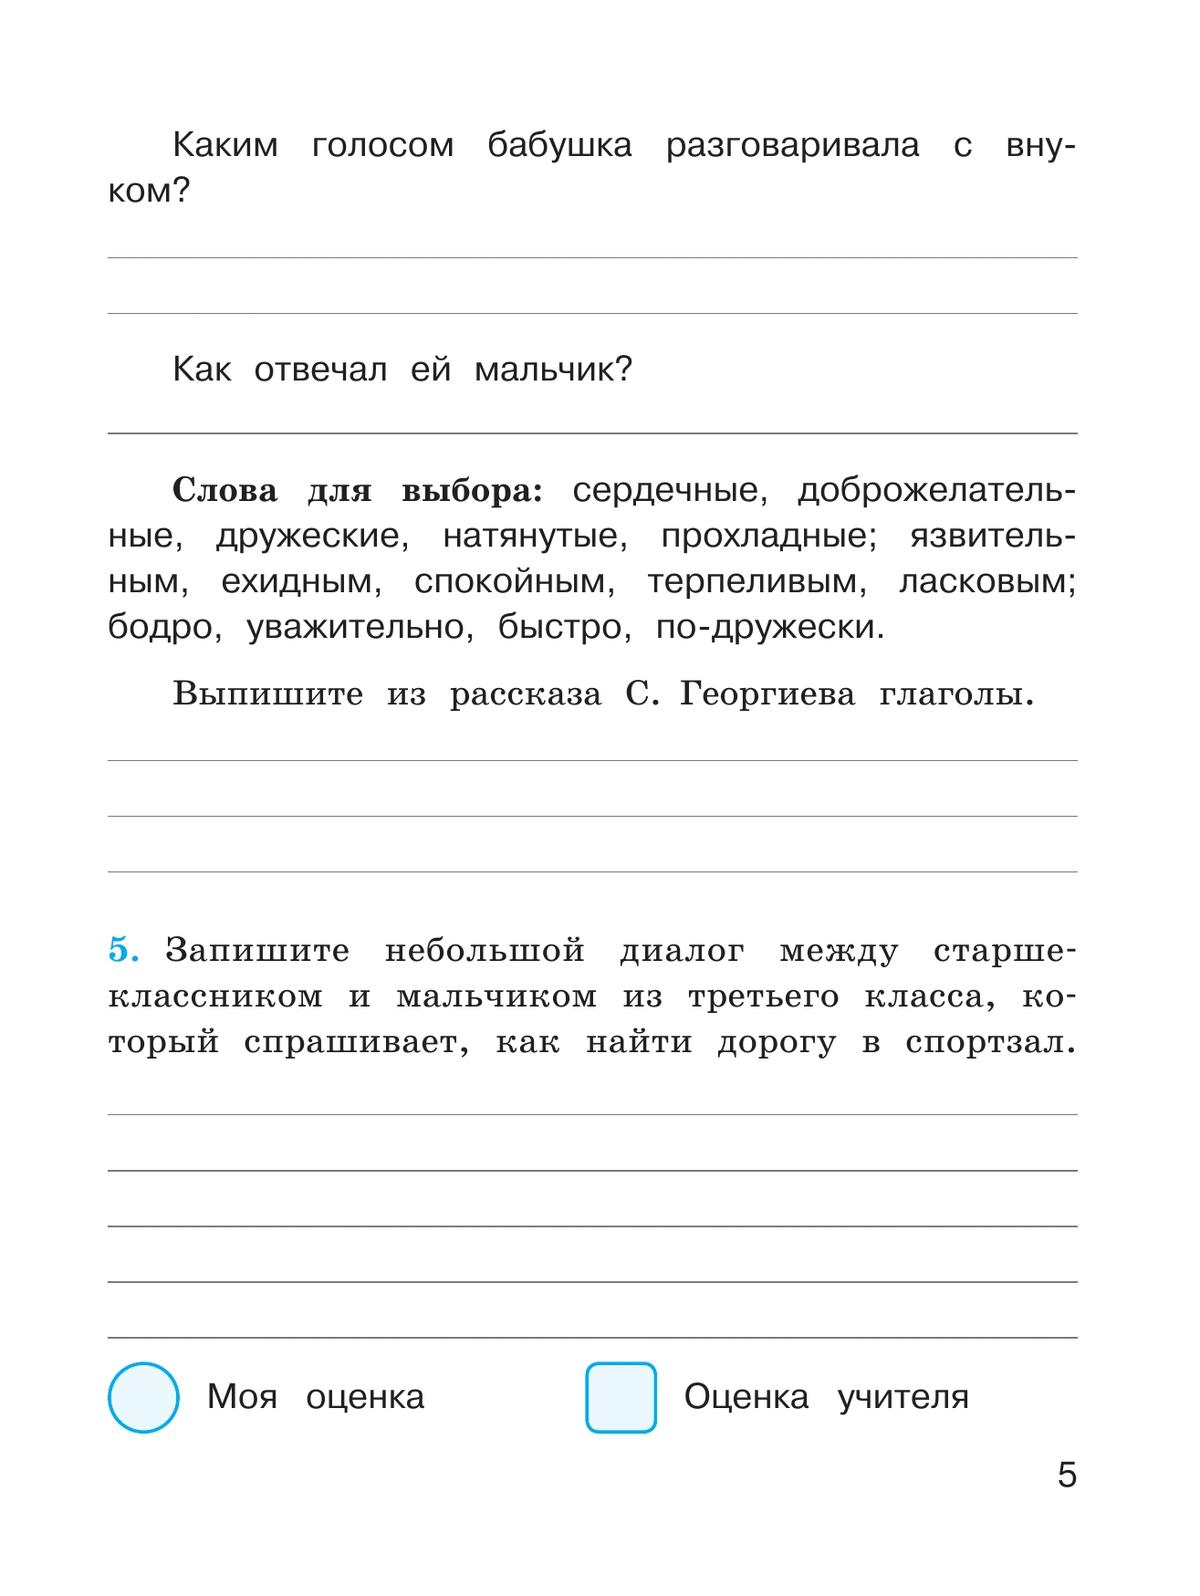 Русский язык. Проверочные работы. 3 класс 8